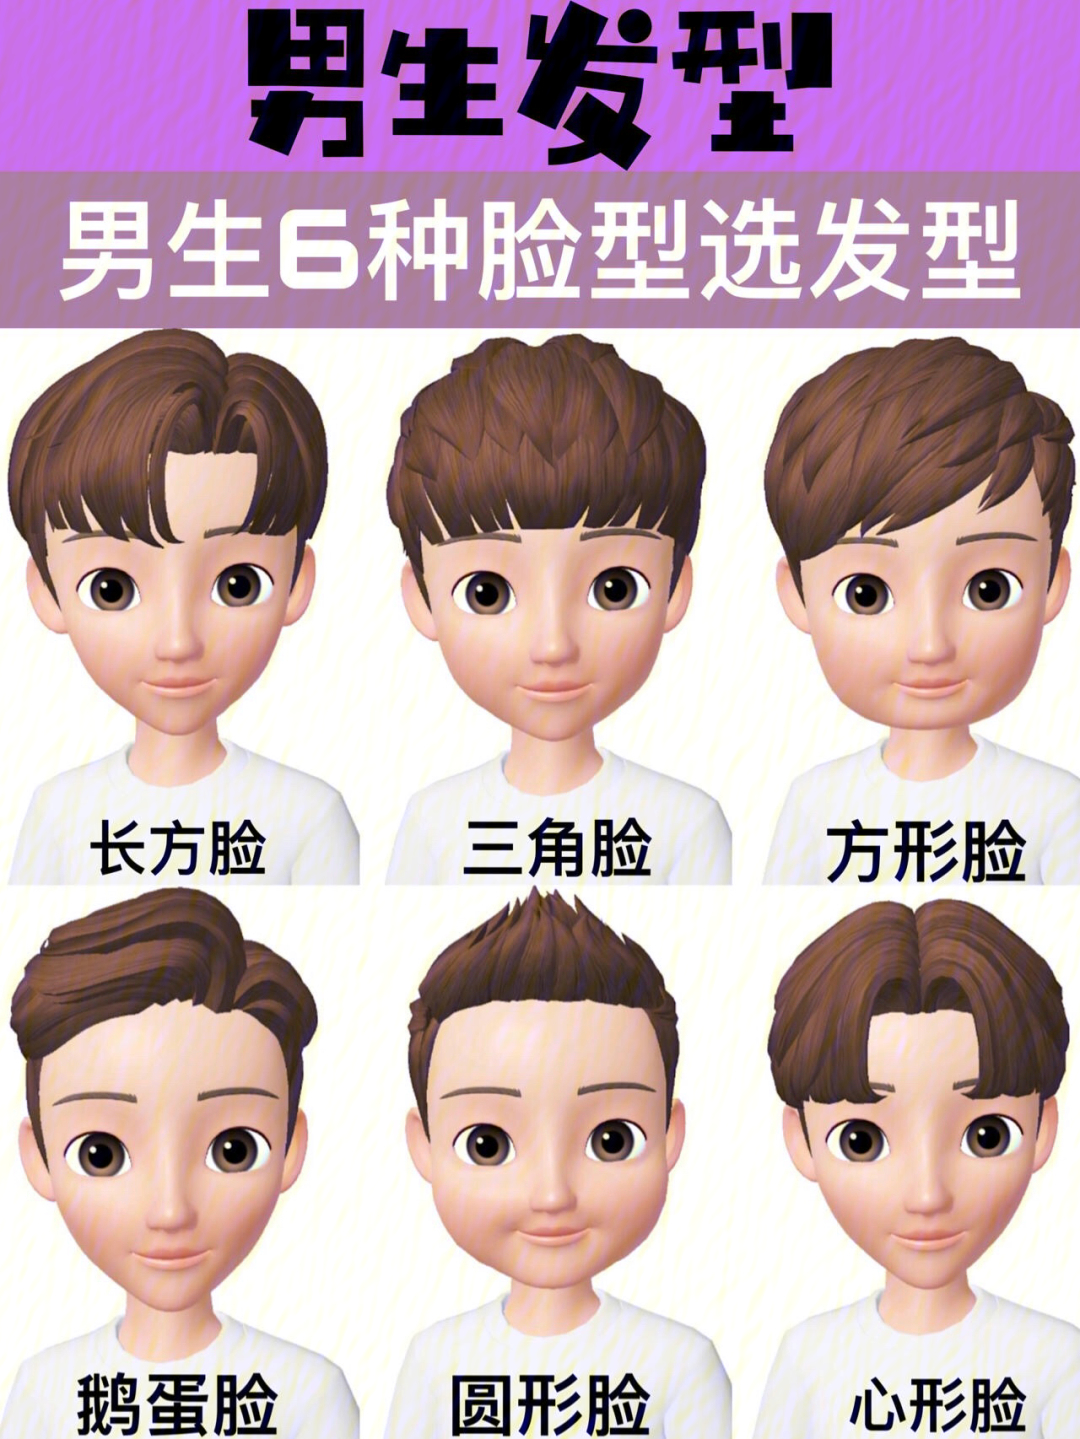 男生发型根据自己脸型选择适合发型